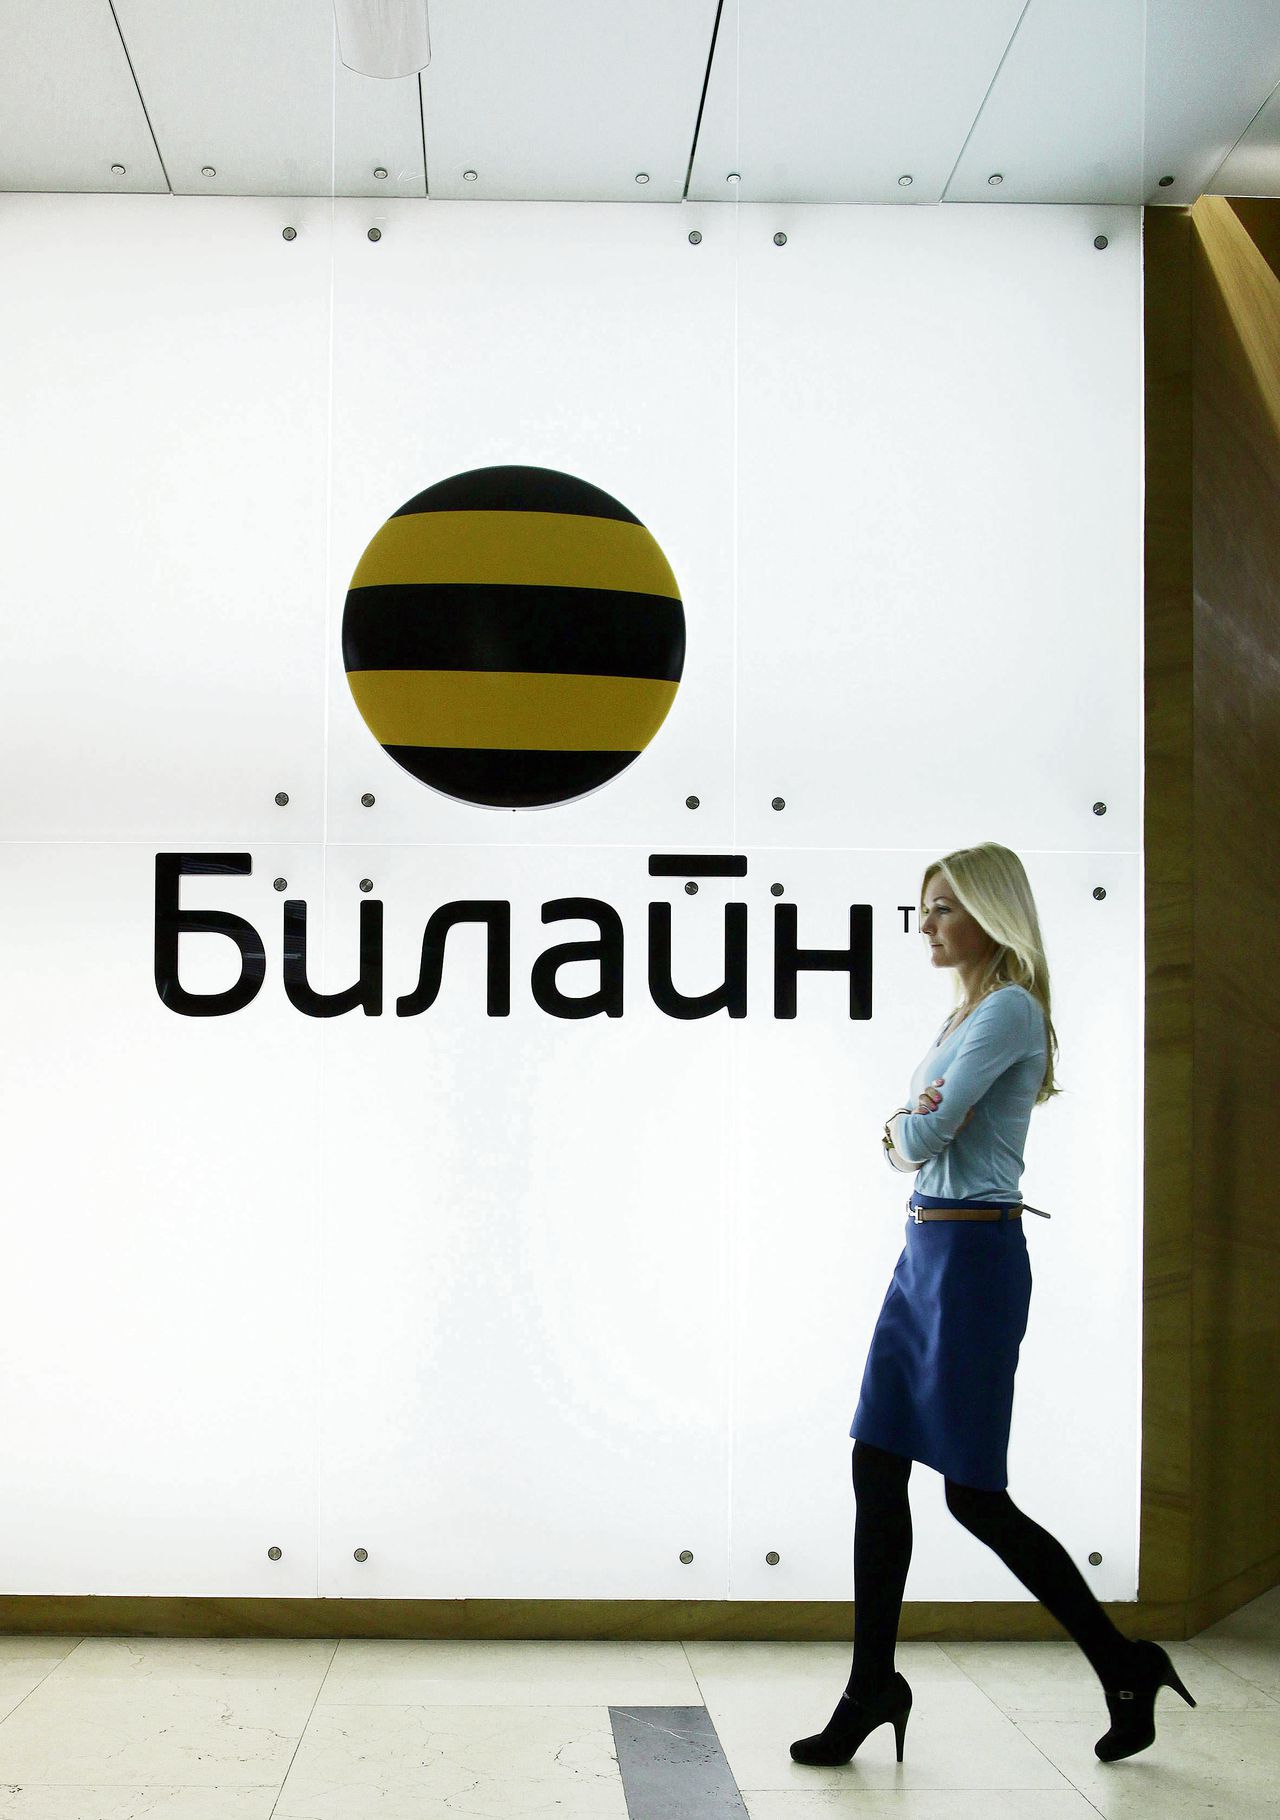 Het kantoor van VimpelCom in Moskou, 2012. Justitie in meerdere landen onderzoekt omkoping door het bedrijf.